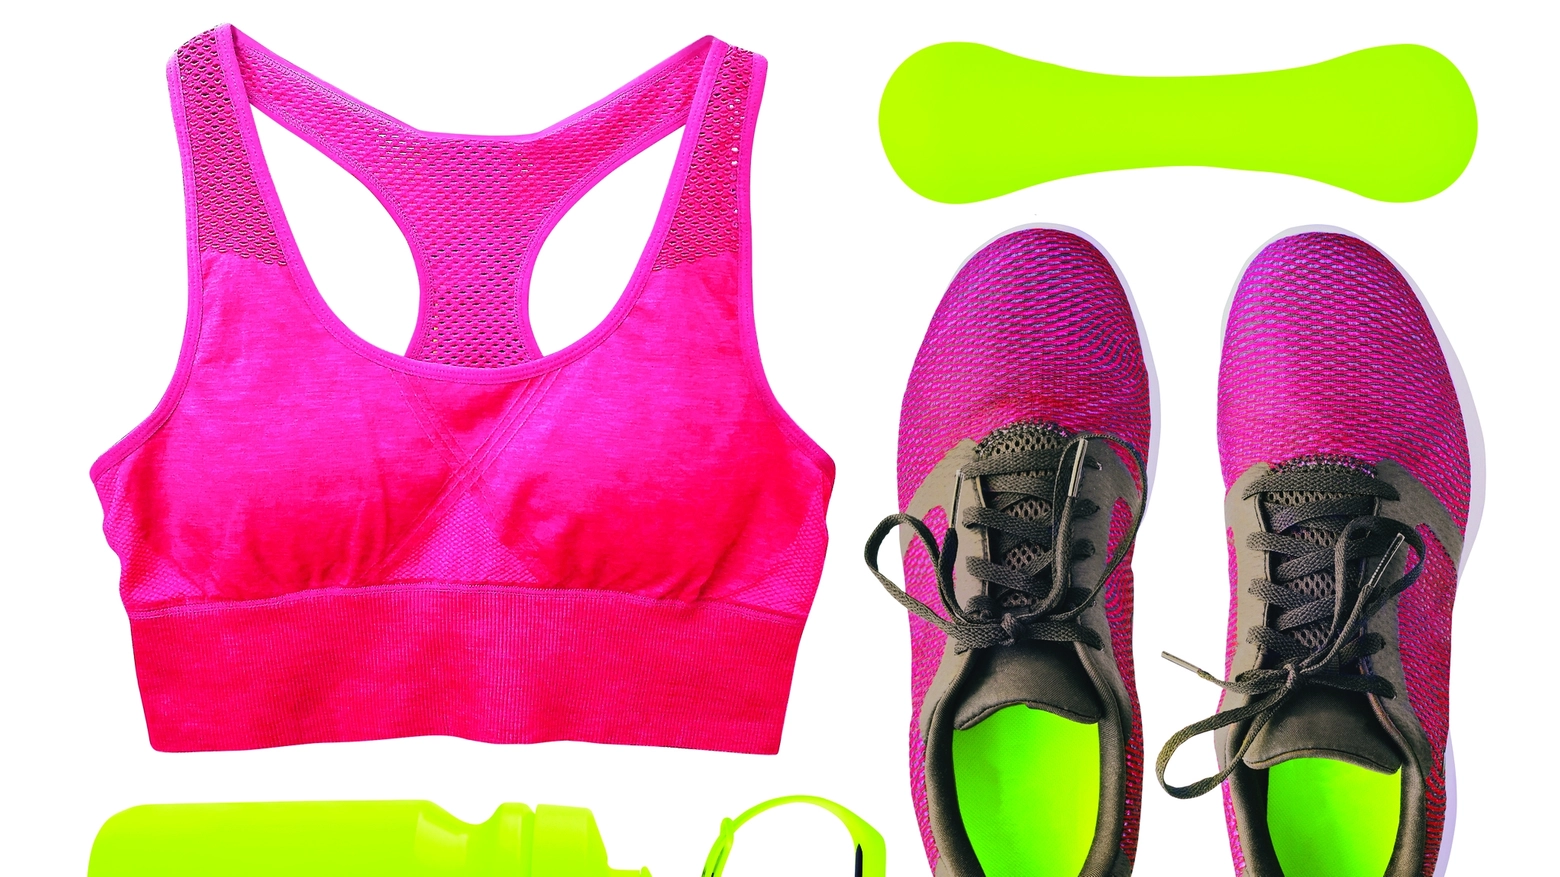 Il perfetto kit per il runner prevedere scarpe traspiranti e altri accessori